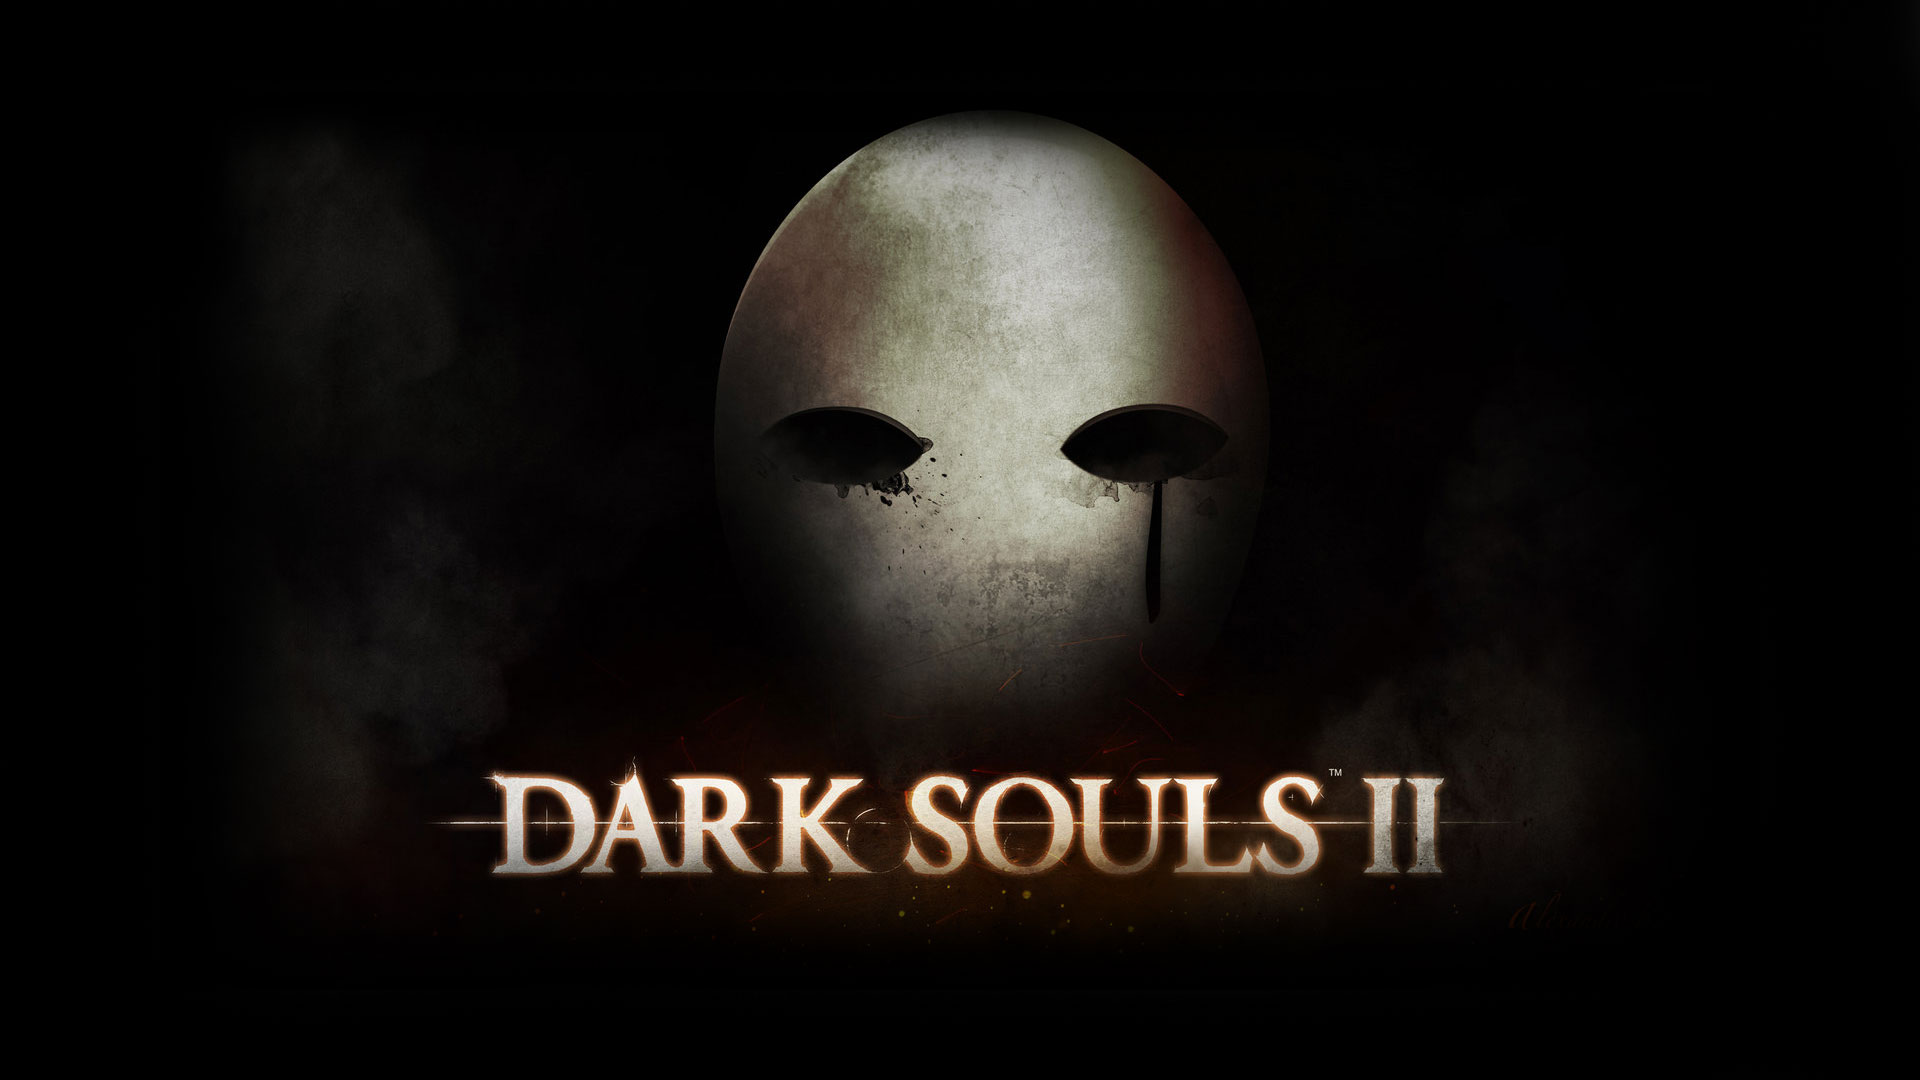 48+] Dark Souls 2 HD Wallpaper - WallpaperSafari